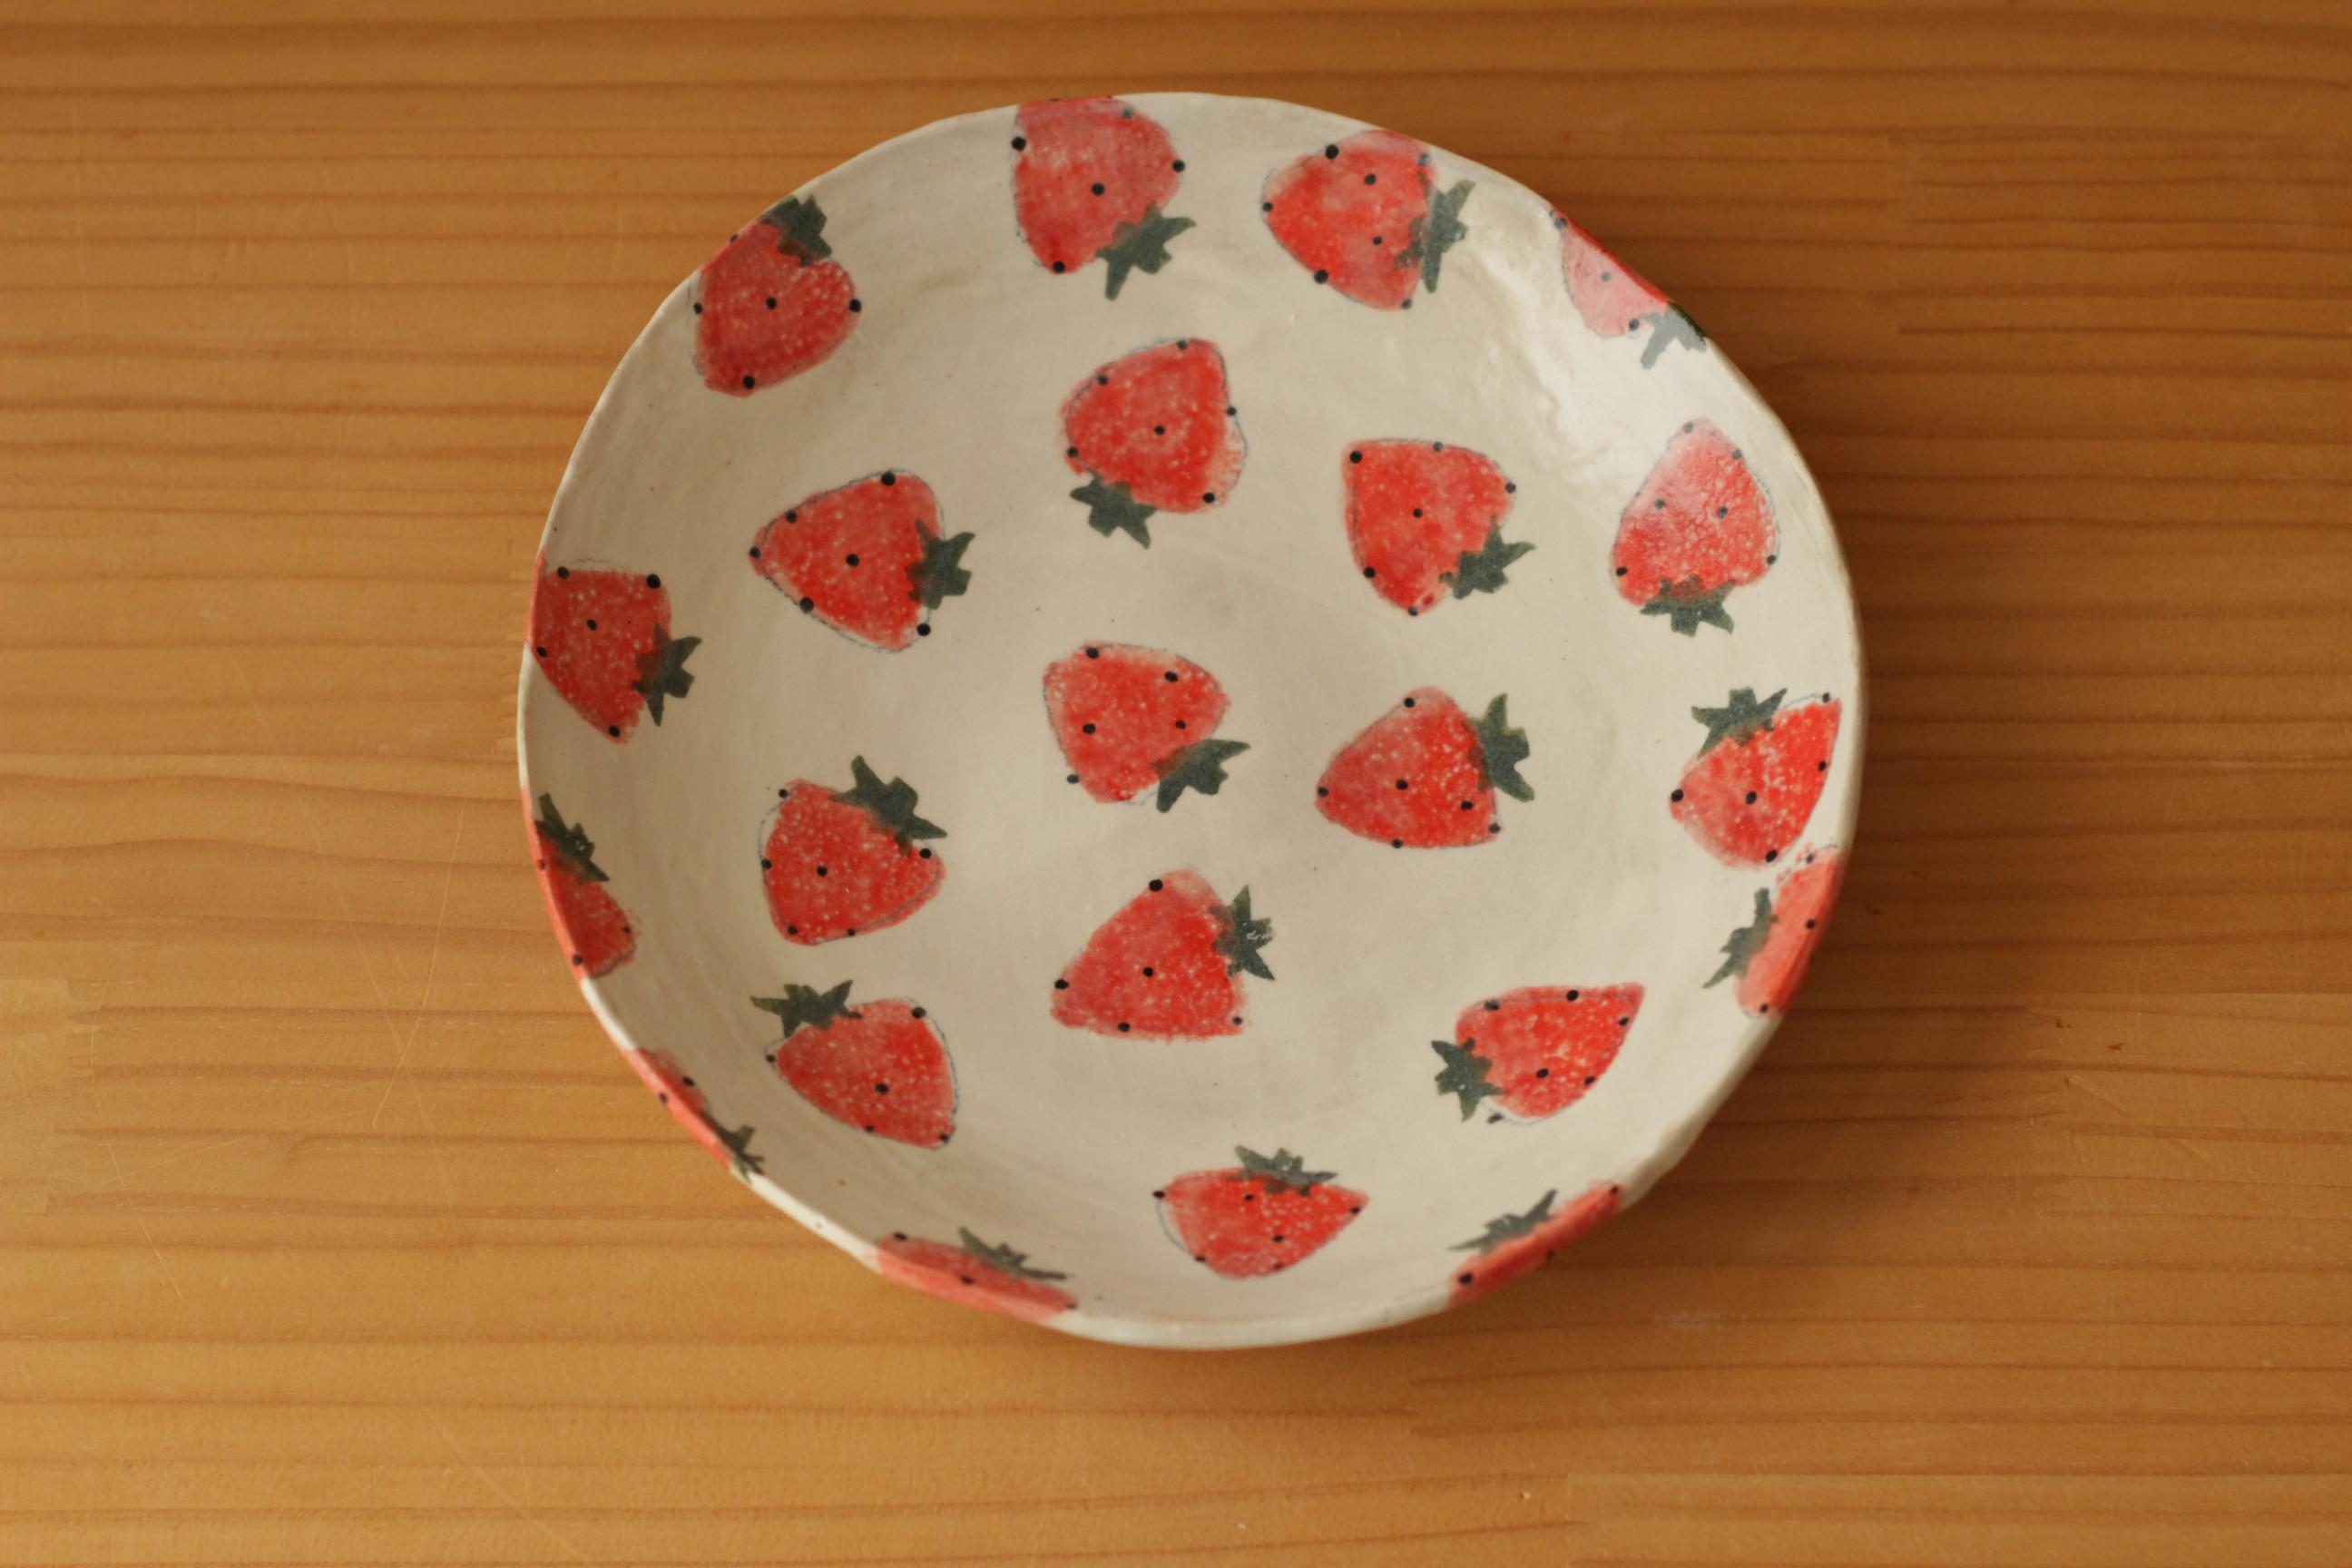 やまぐちあさこ。粉引きイチゴのスクエアパッド型皿